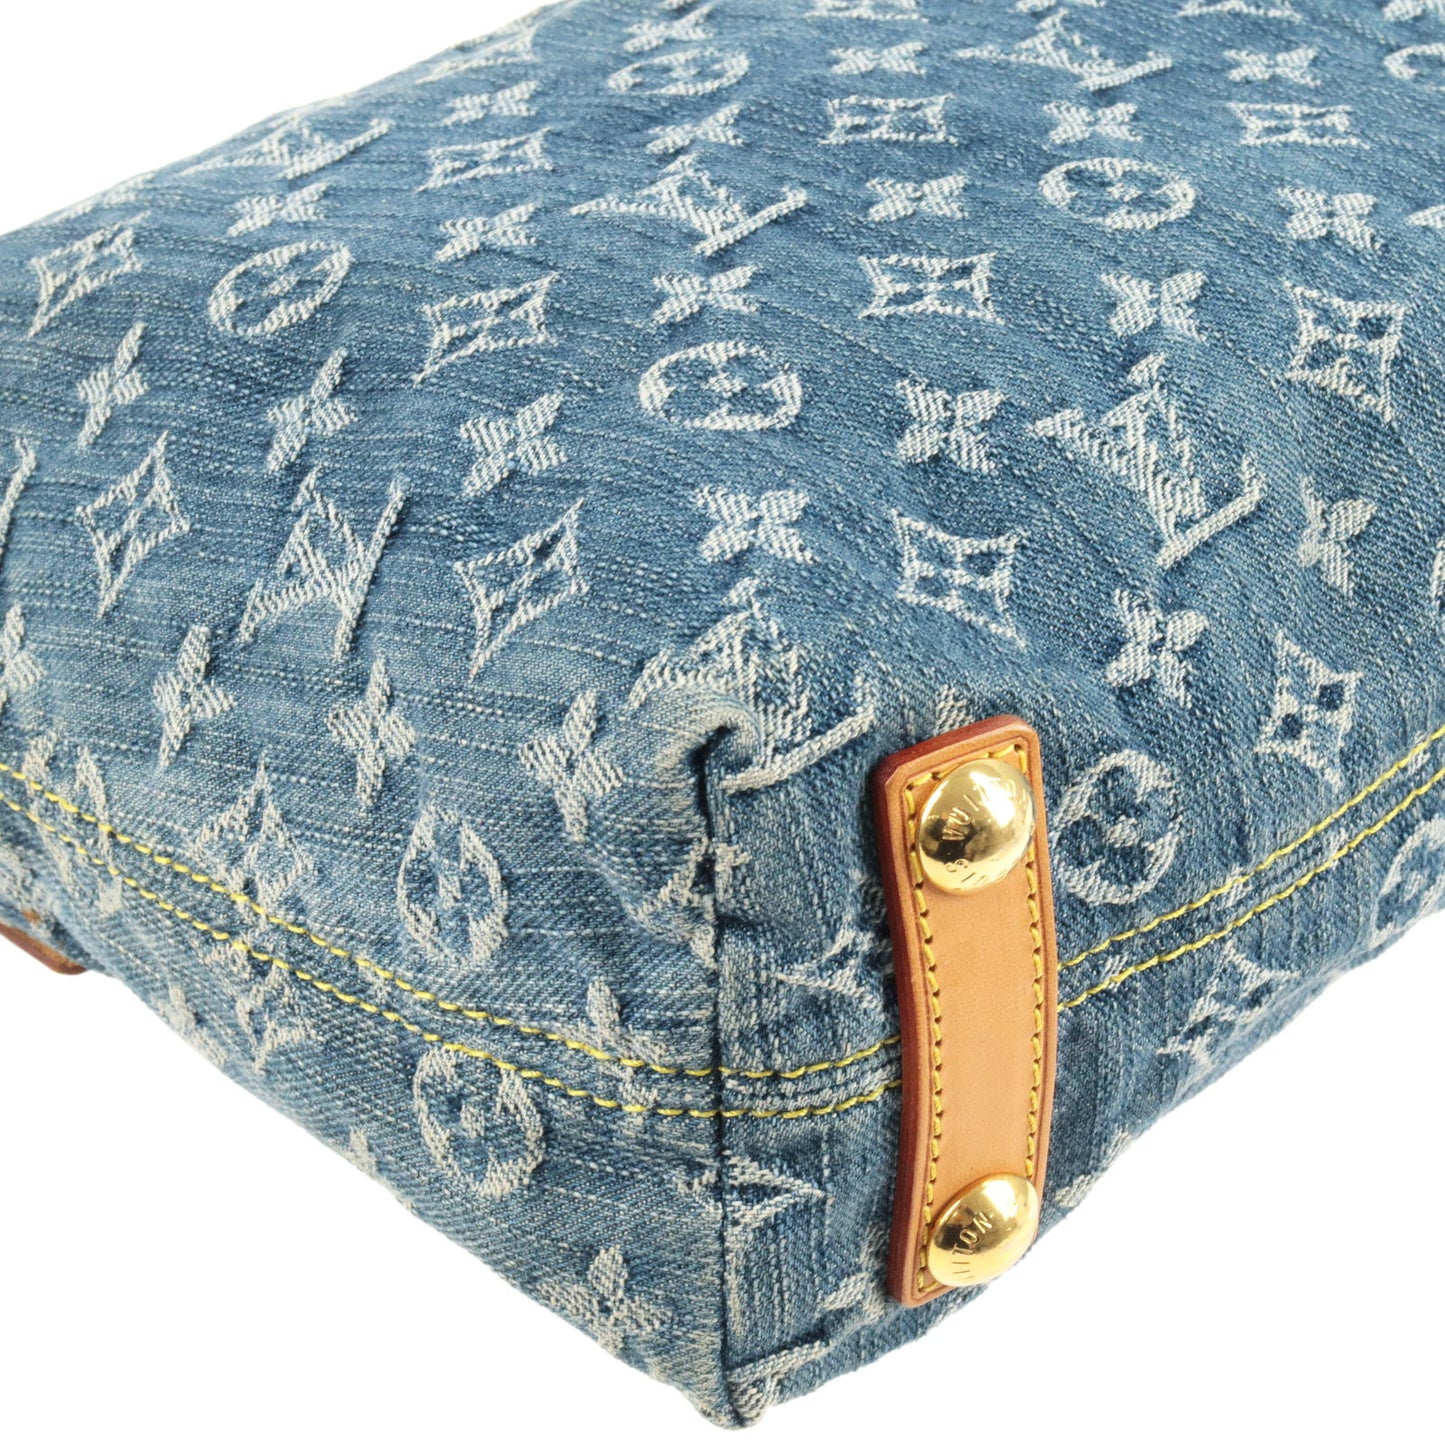 Louis Vuitton Monogram Denim Baggy PM Shoulder Bag Blue M95049